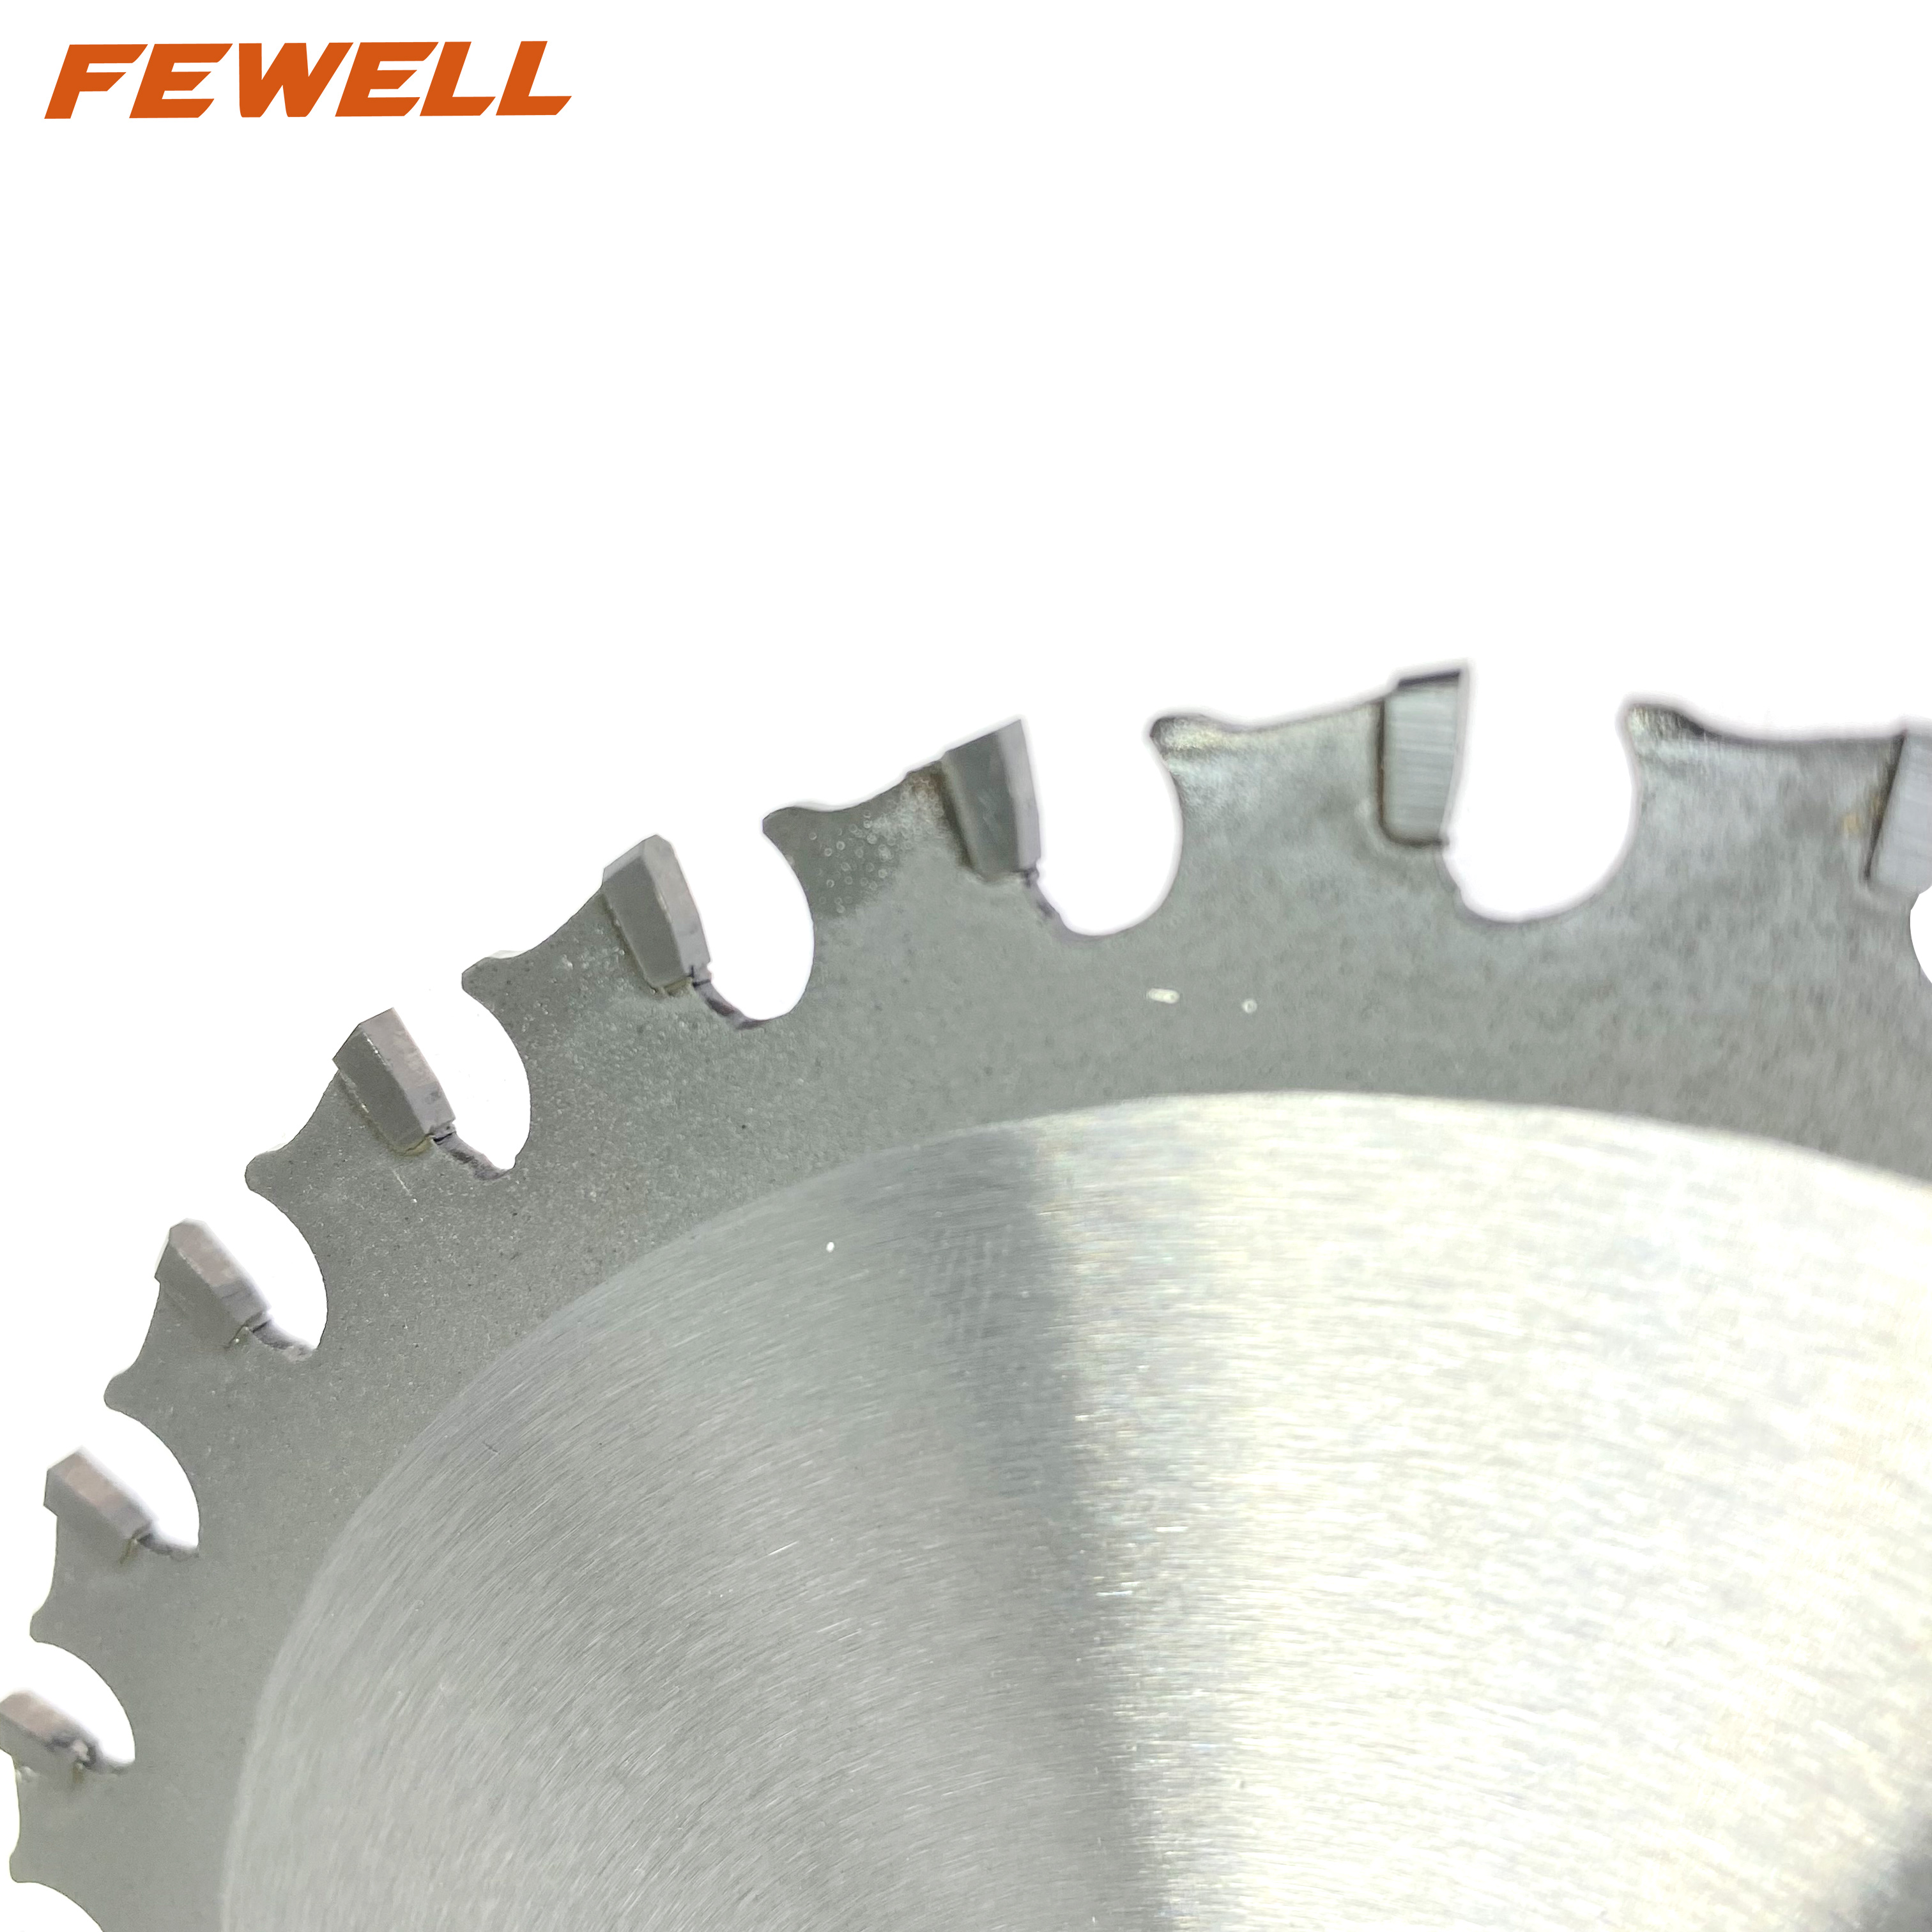 Hoja de sierra circular tct de herramientas Koera de 5 pulgadas, 135x30T x 20mm para cortar aluminio